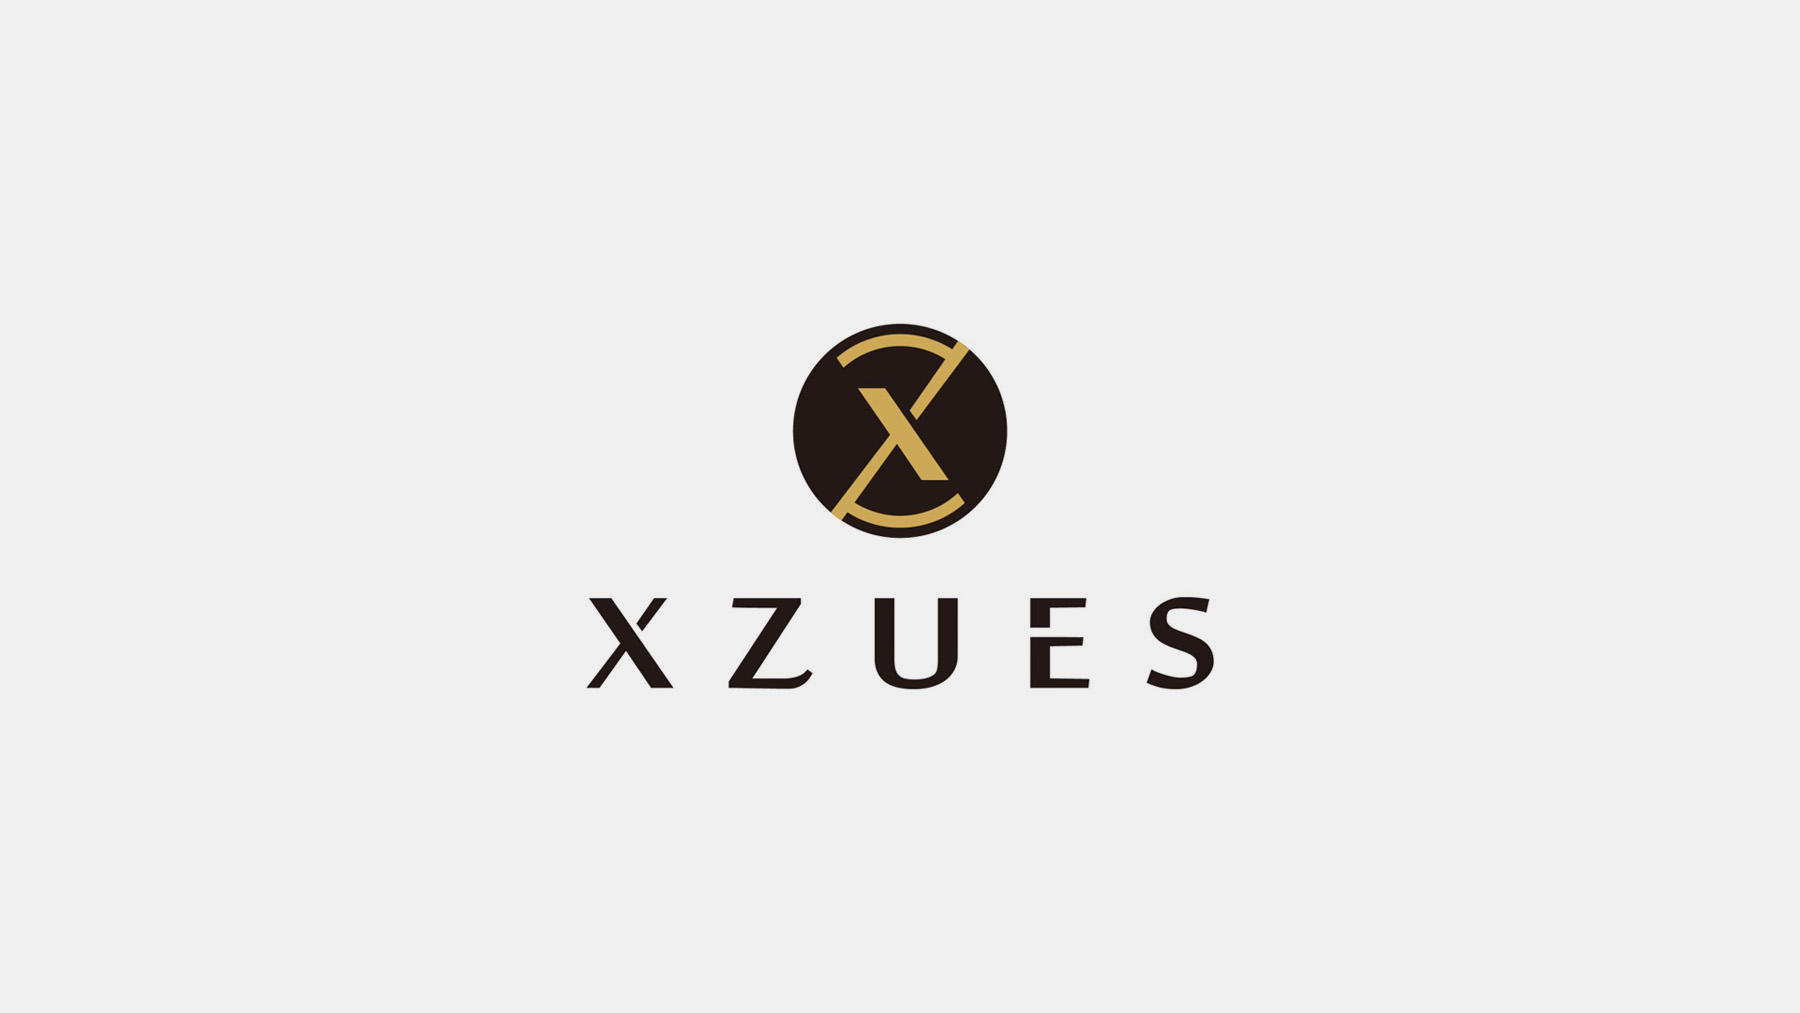 Xzues耳机品牌设计_页面_1.jpg